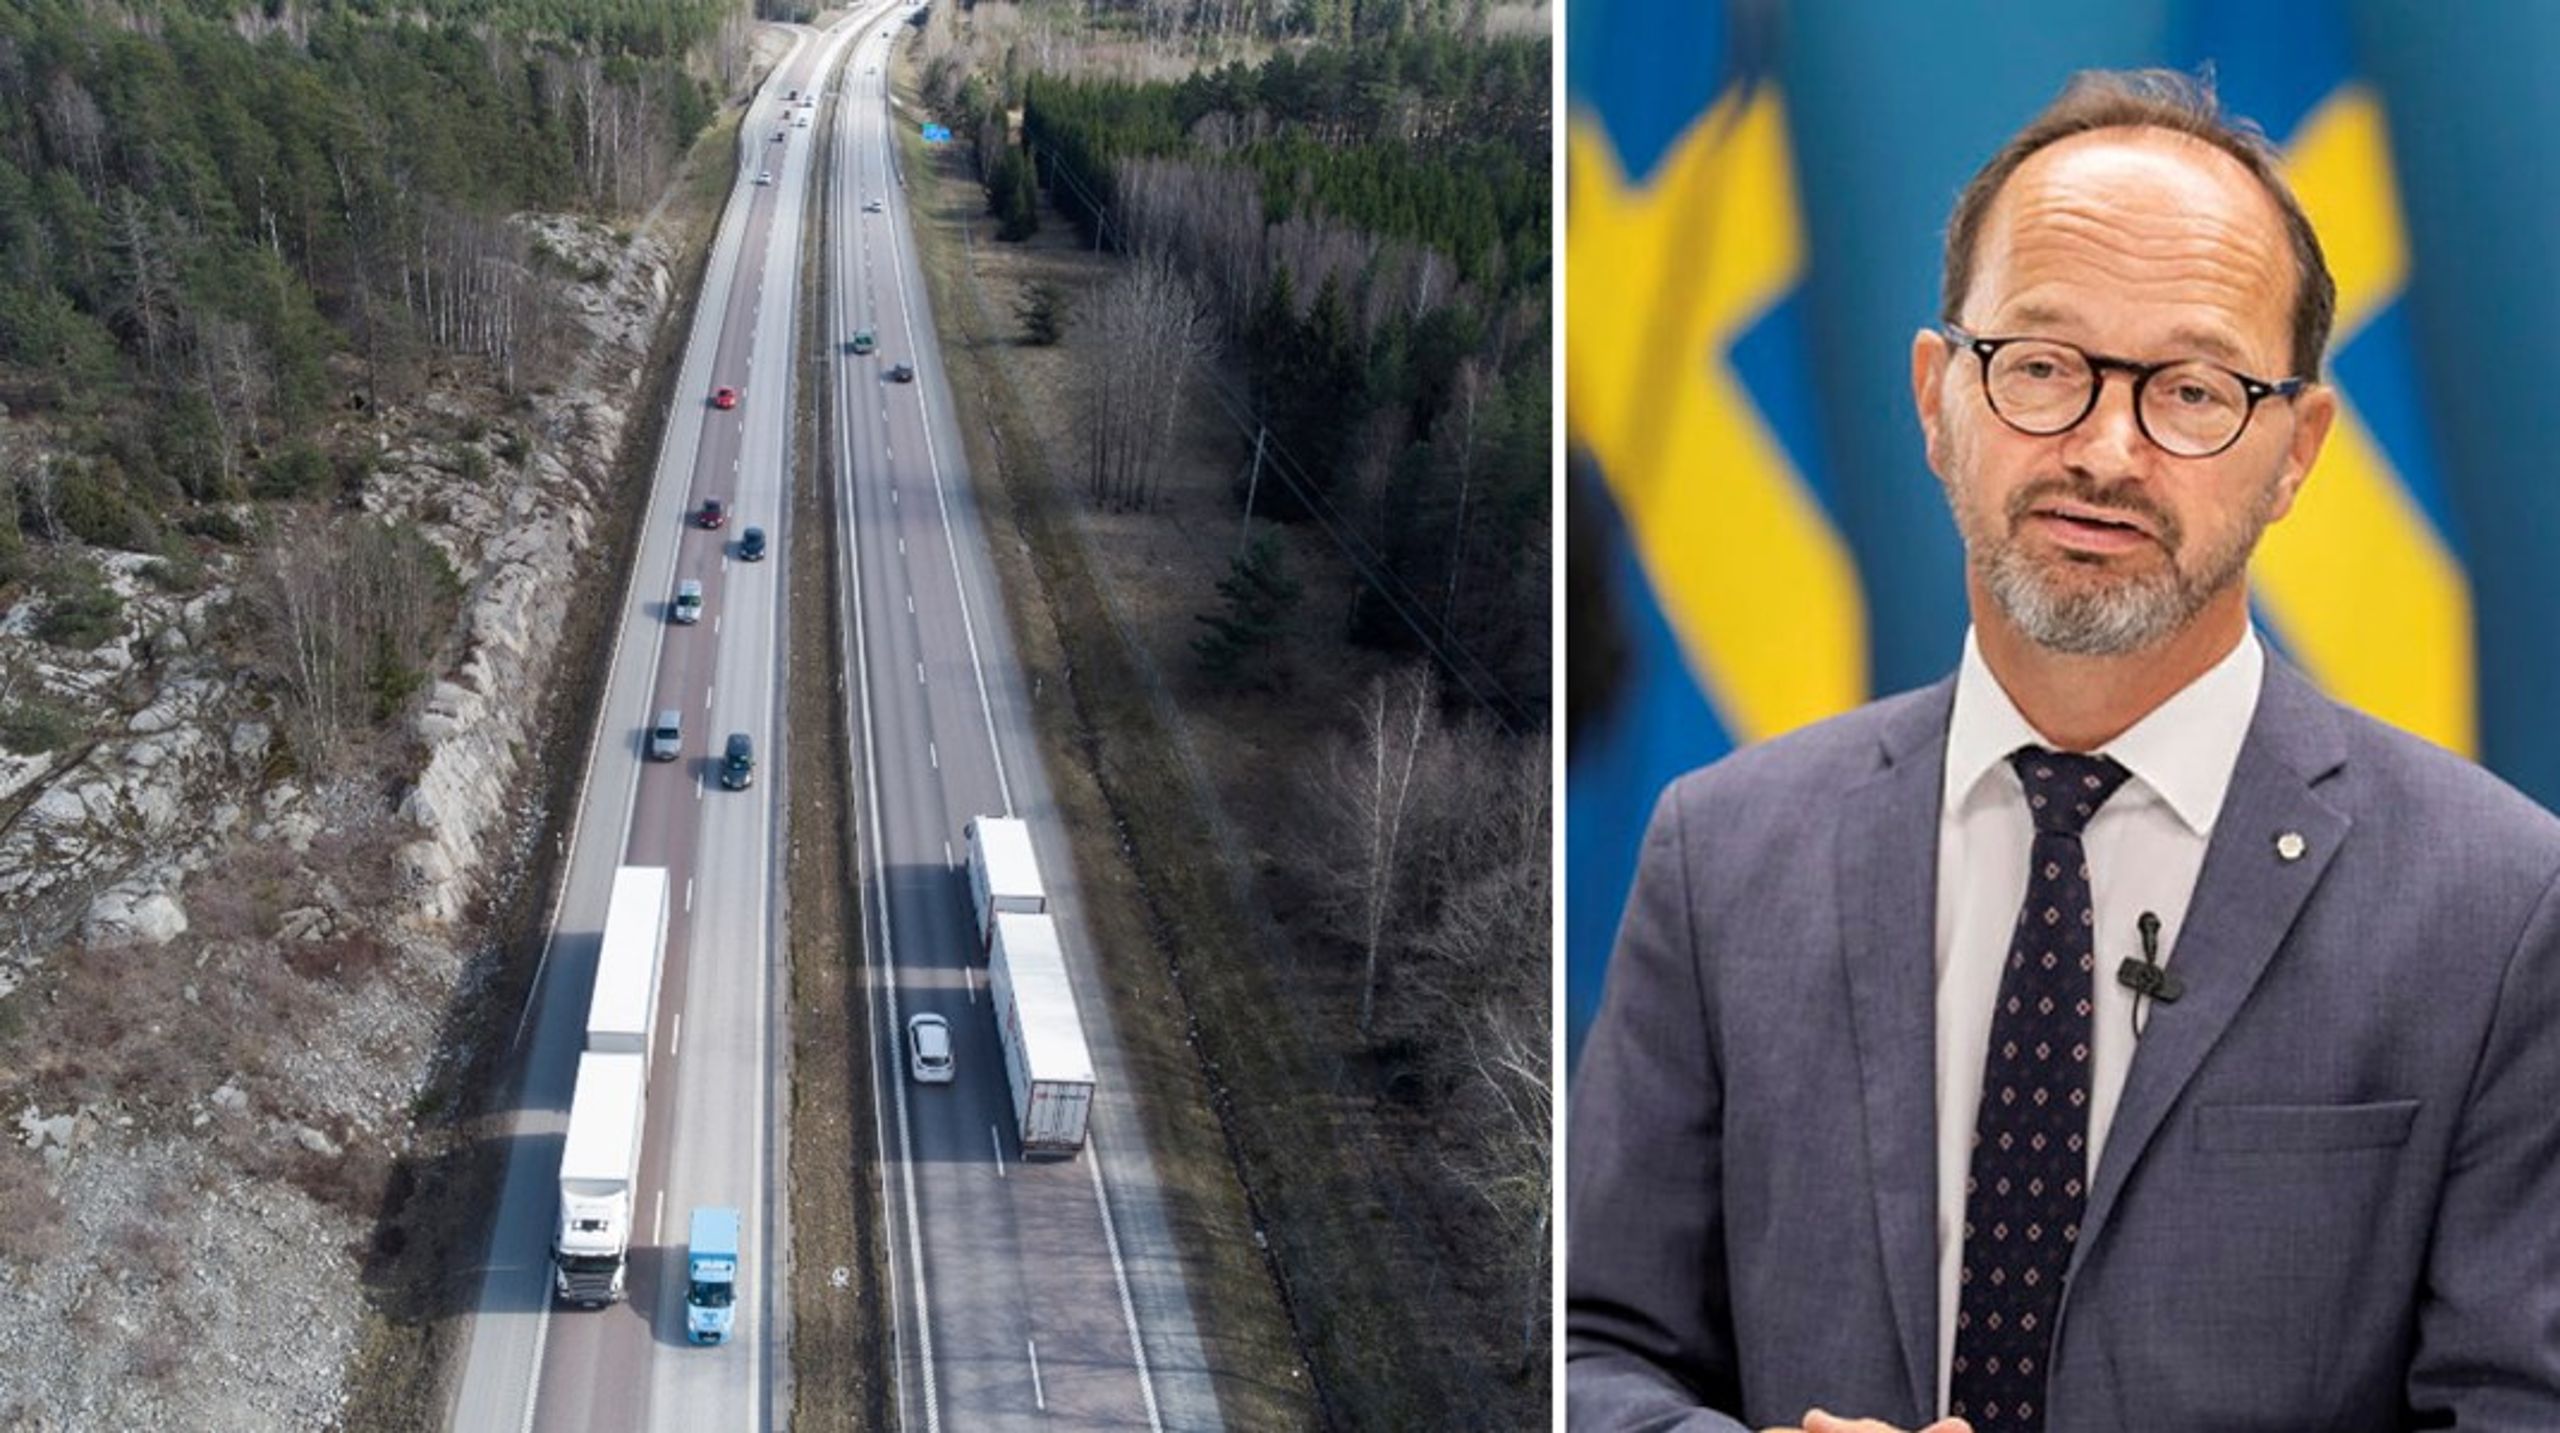 En högerkonservativ regering skulle innebära att reformarbetet stannar upp och att Sverige återigen får en regering som ser krav på schysta villkor som protektionism, skriver infrastrukturminister Tomas Eneroth (S).